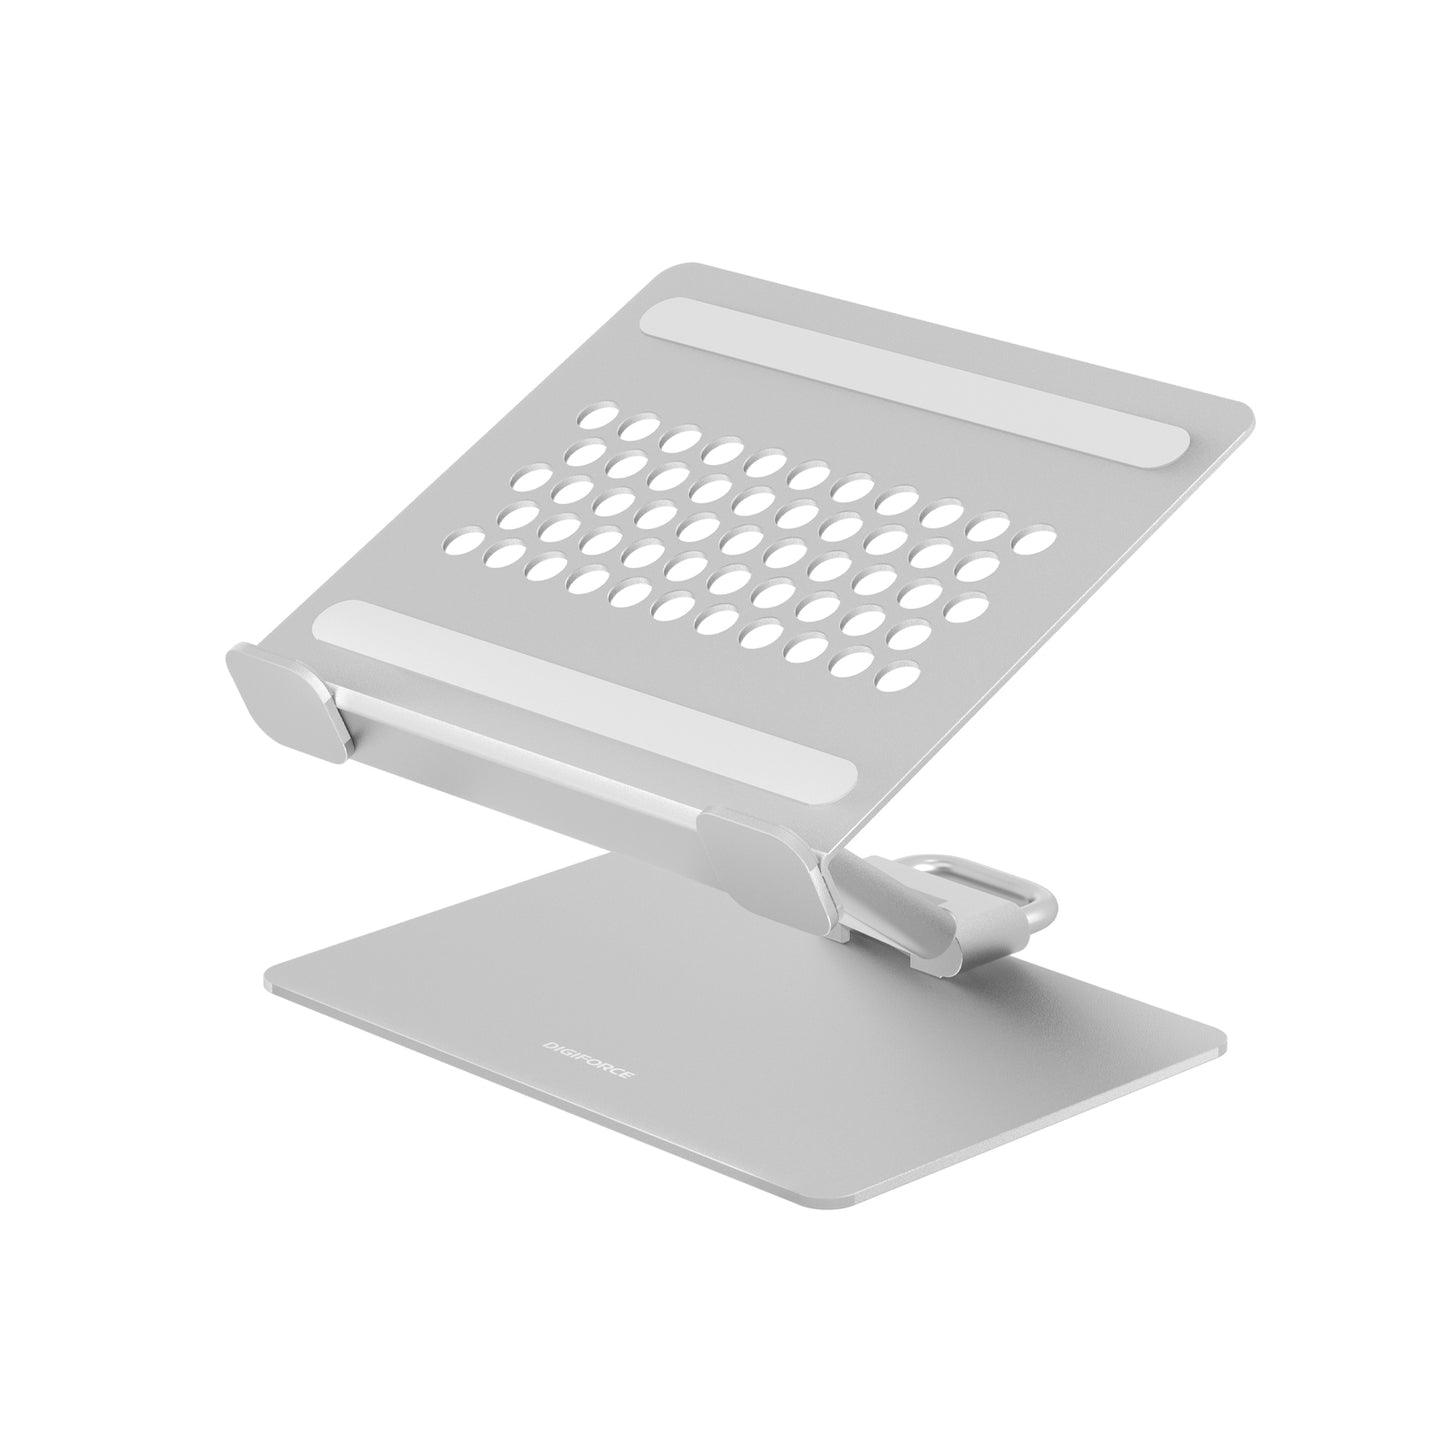 ノートパソコン スタンド macbook PCスタンド アルミ合金製 耐久性 貼り付け型 折り畳み式 冷却 滑り止め 軽量(約50g) 持ち